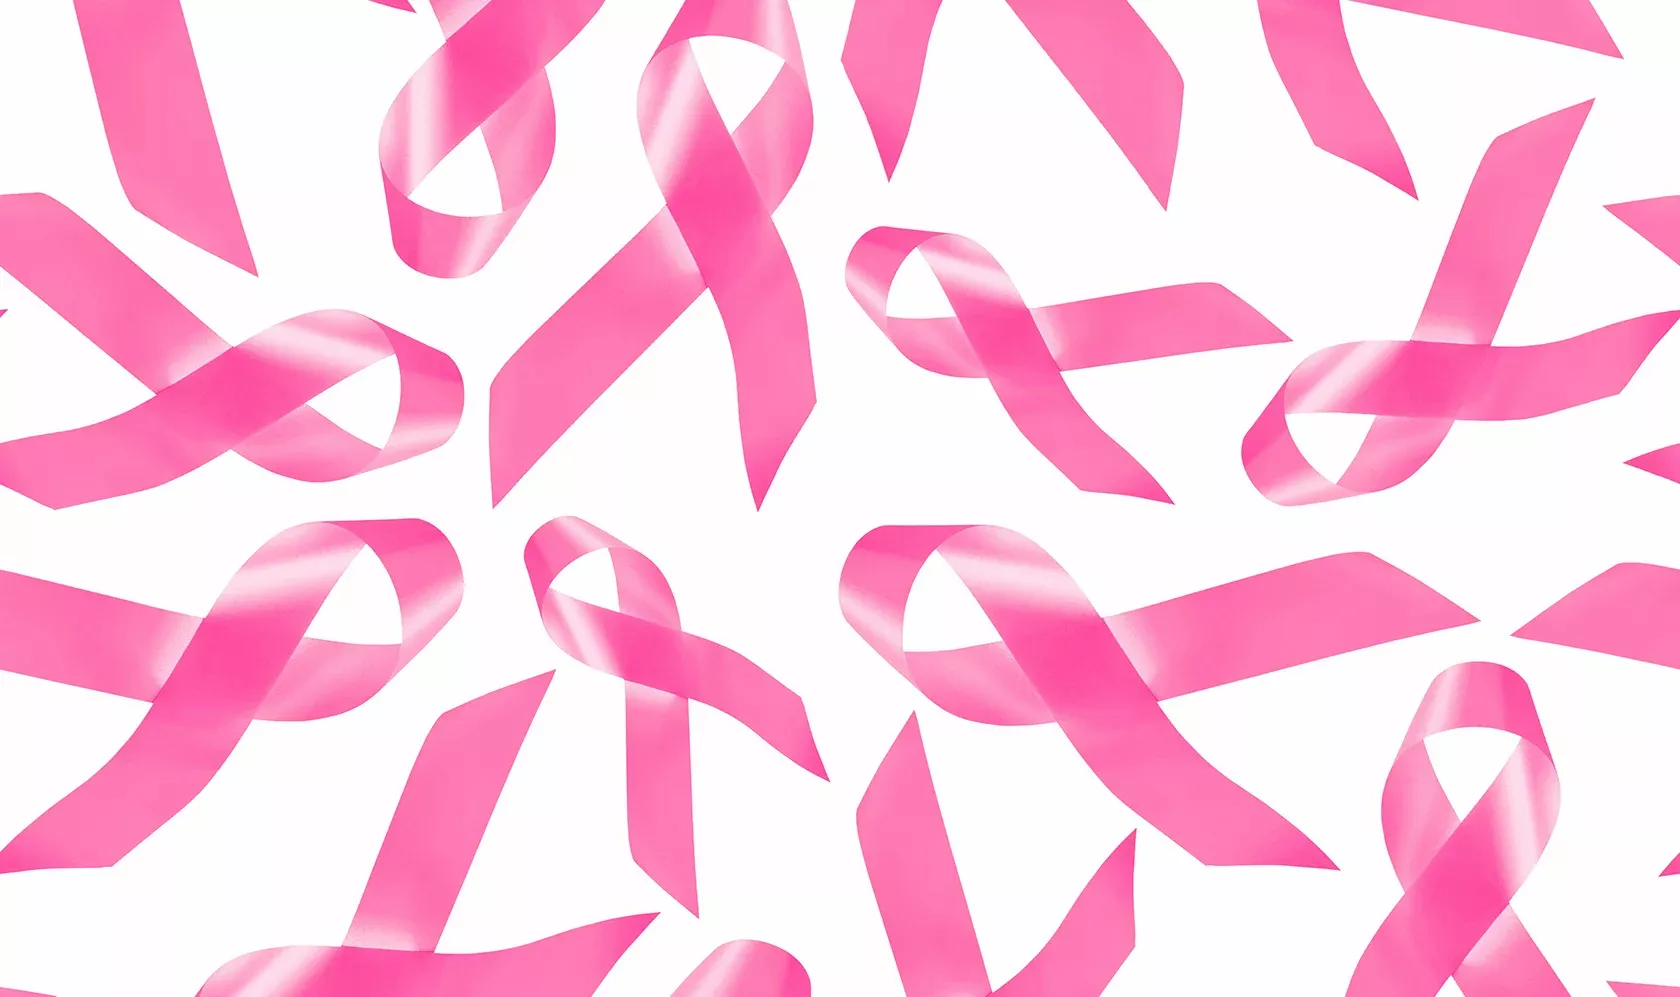 Brustkrebstherapie durch rosa Schleifen dargestellt